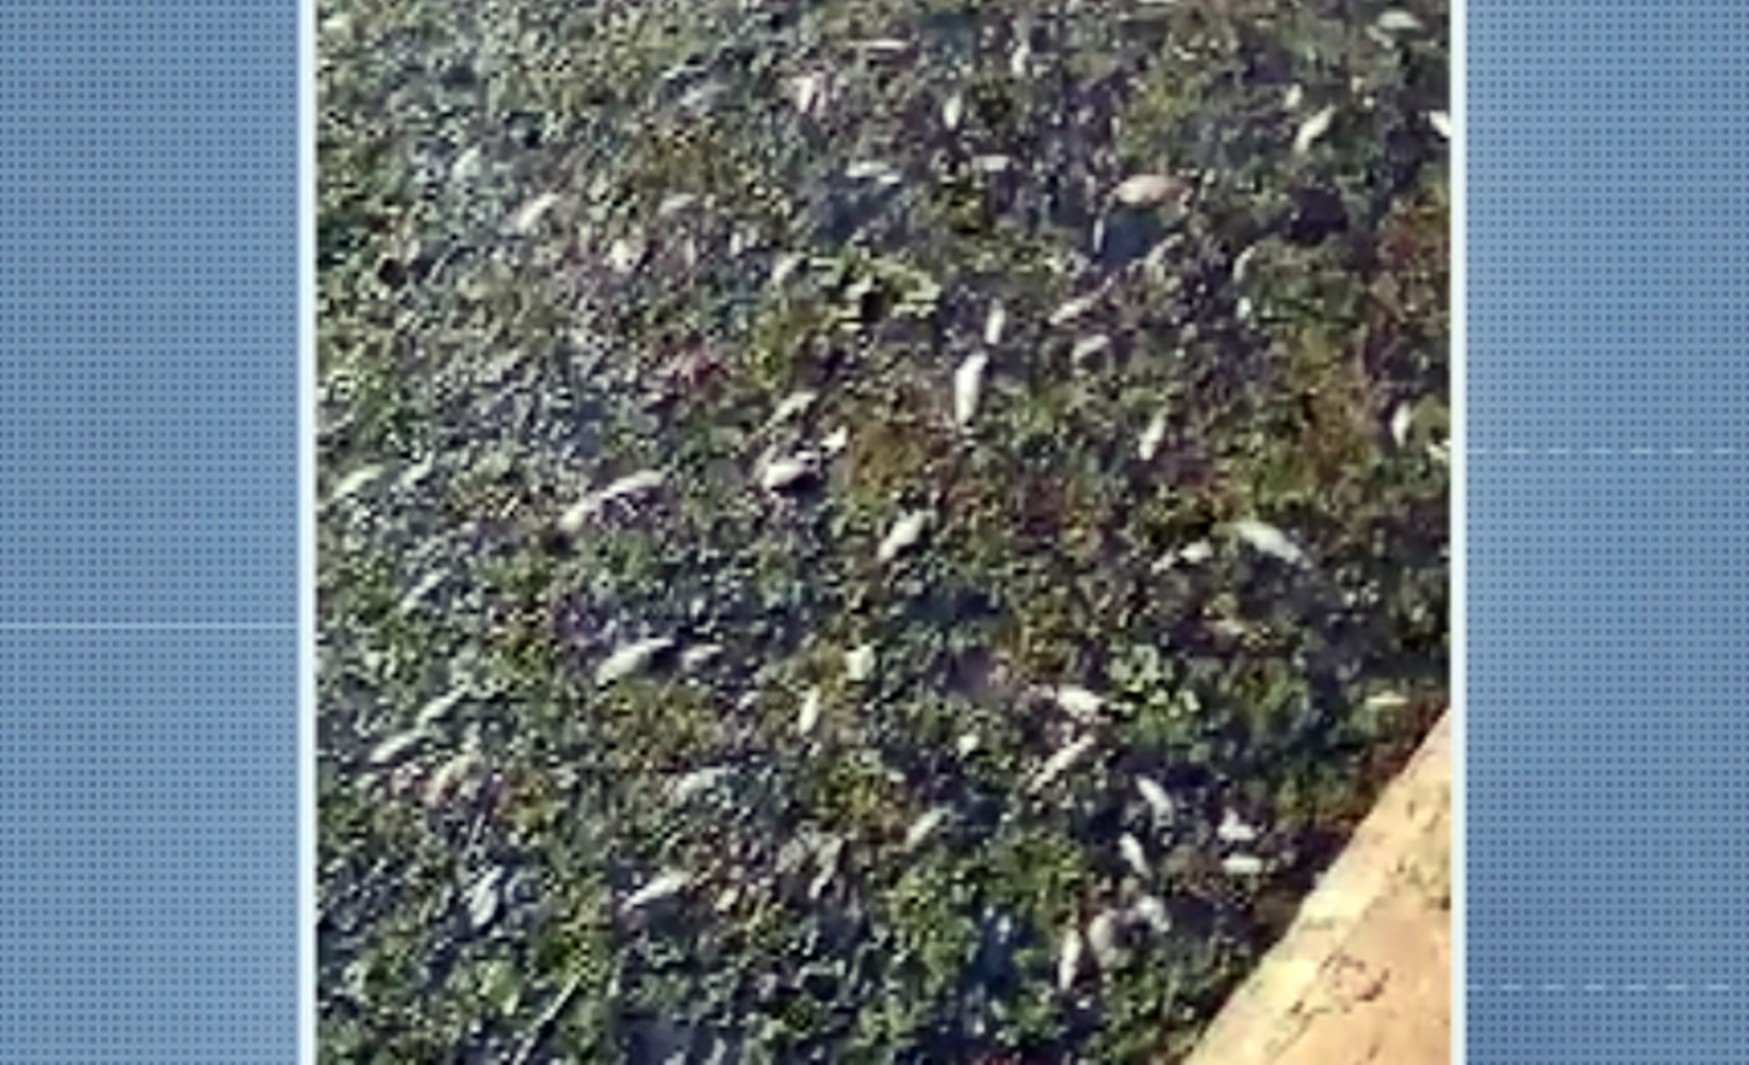 Copasa faz reparação ambiental após vazamento de esgoto causar morte de peixes em Varginha, MG